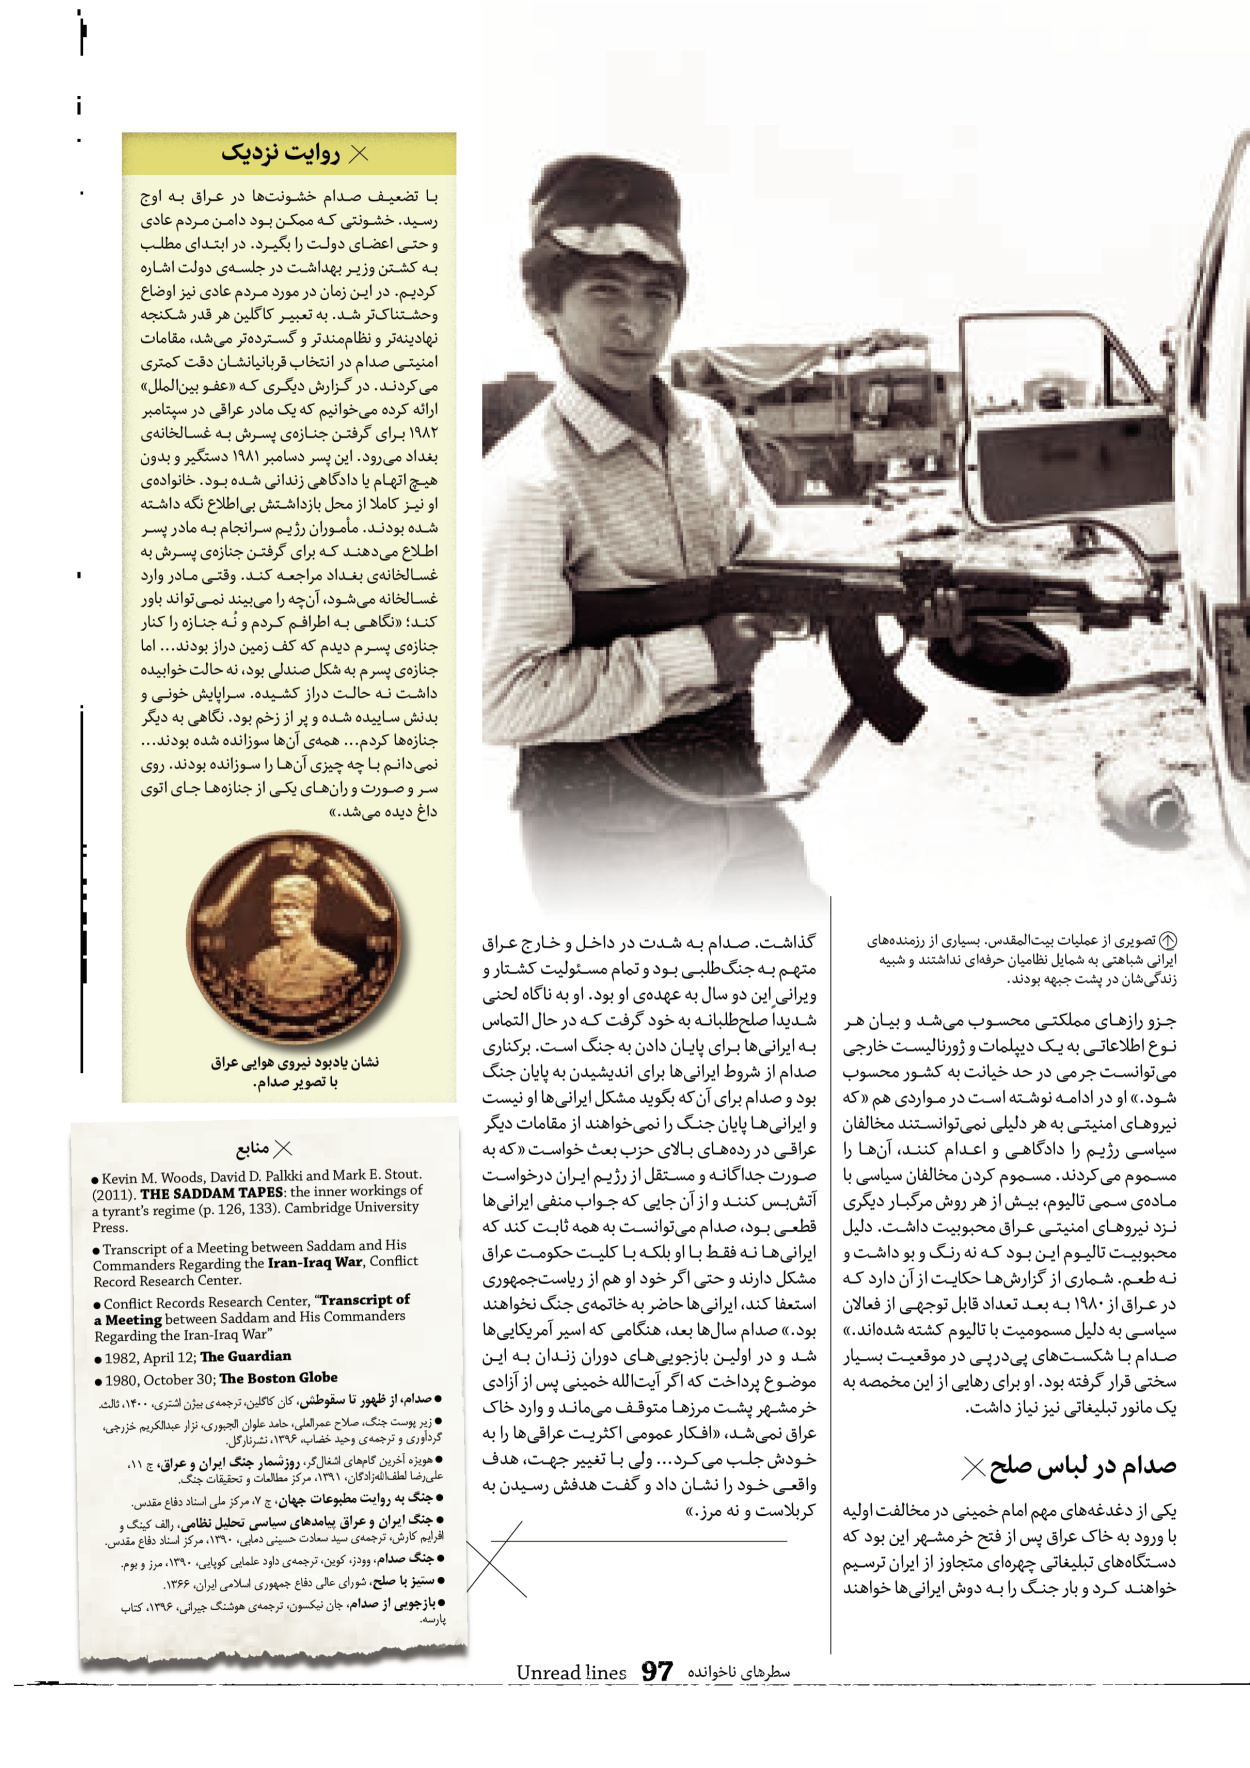 روزنامه ایران - ویژه نامه سطرهای ناخوانده - ۰۳ خرداد ۱۴۰۲ - صفحه ۹۷